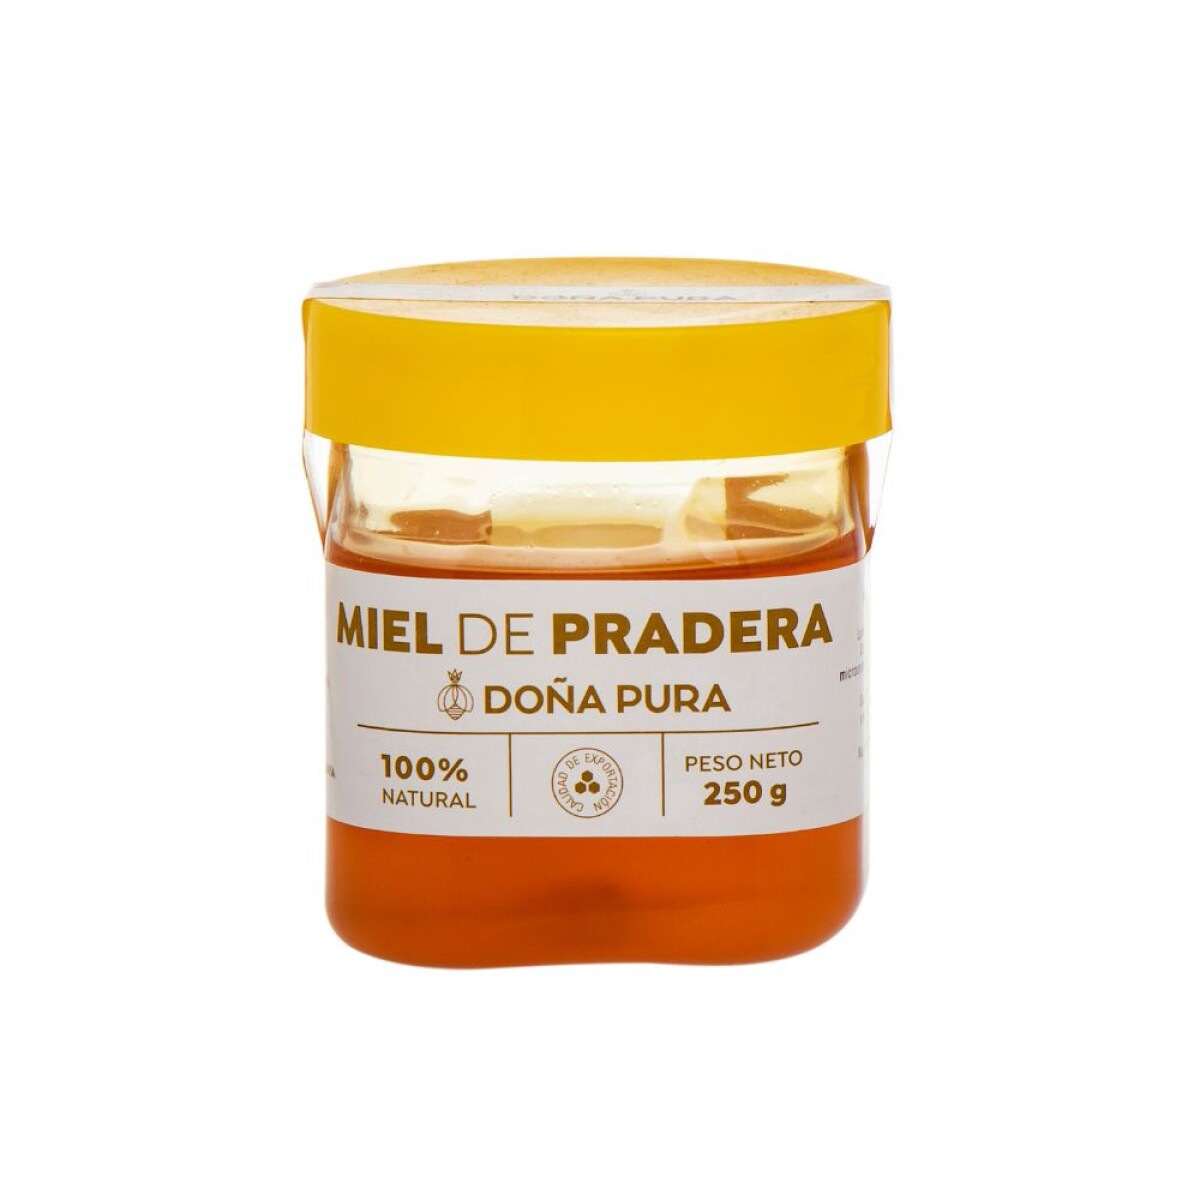 Miel de pradera Doña Pura 250g 